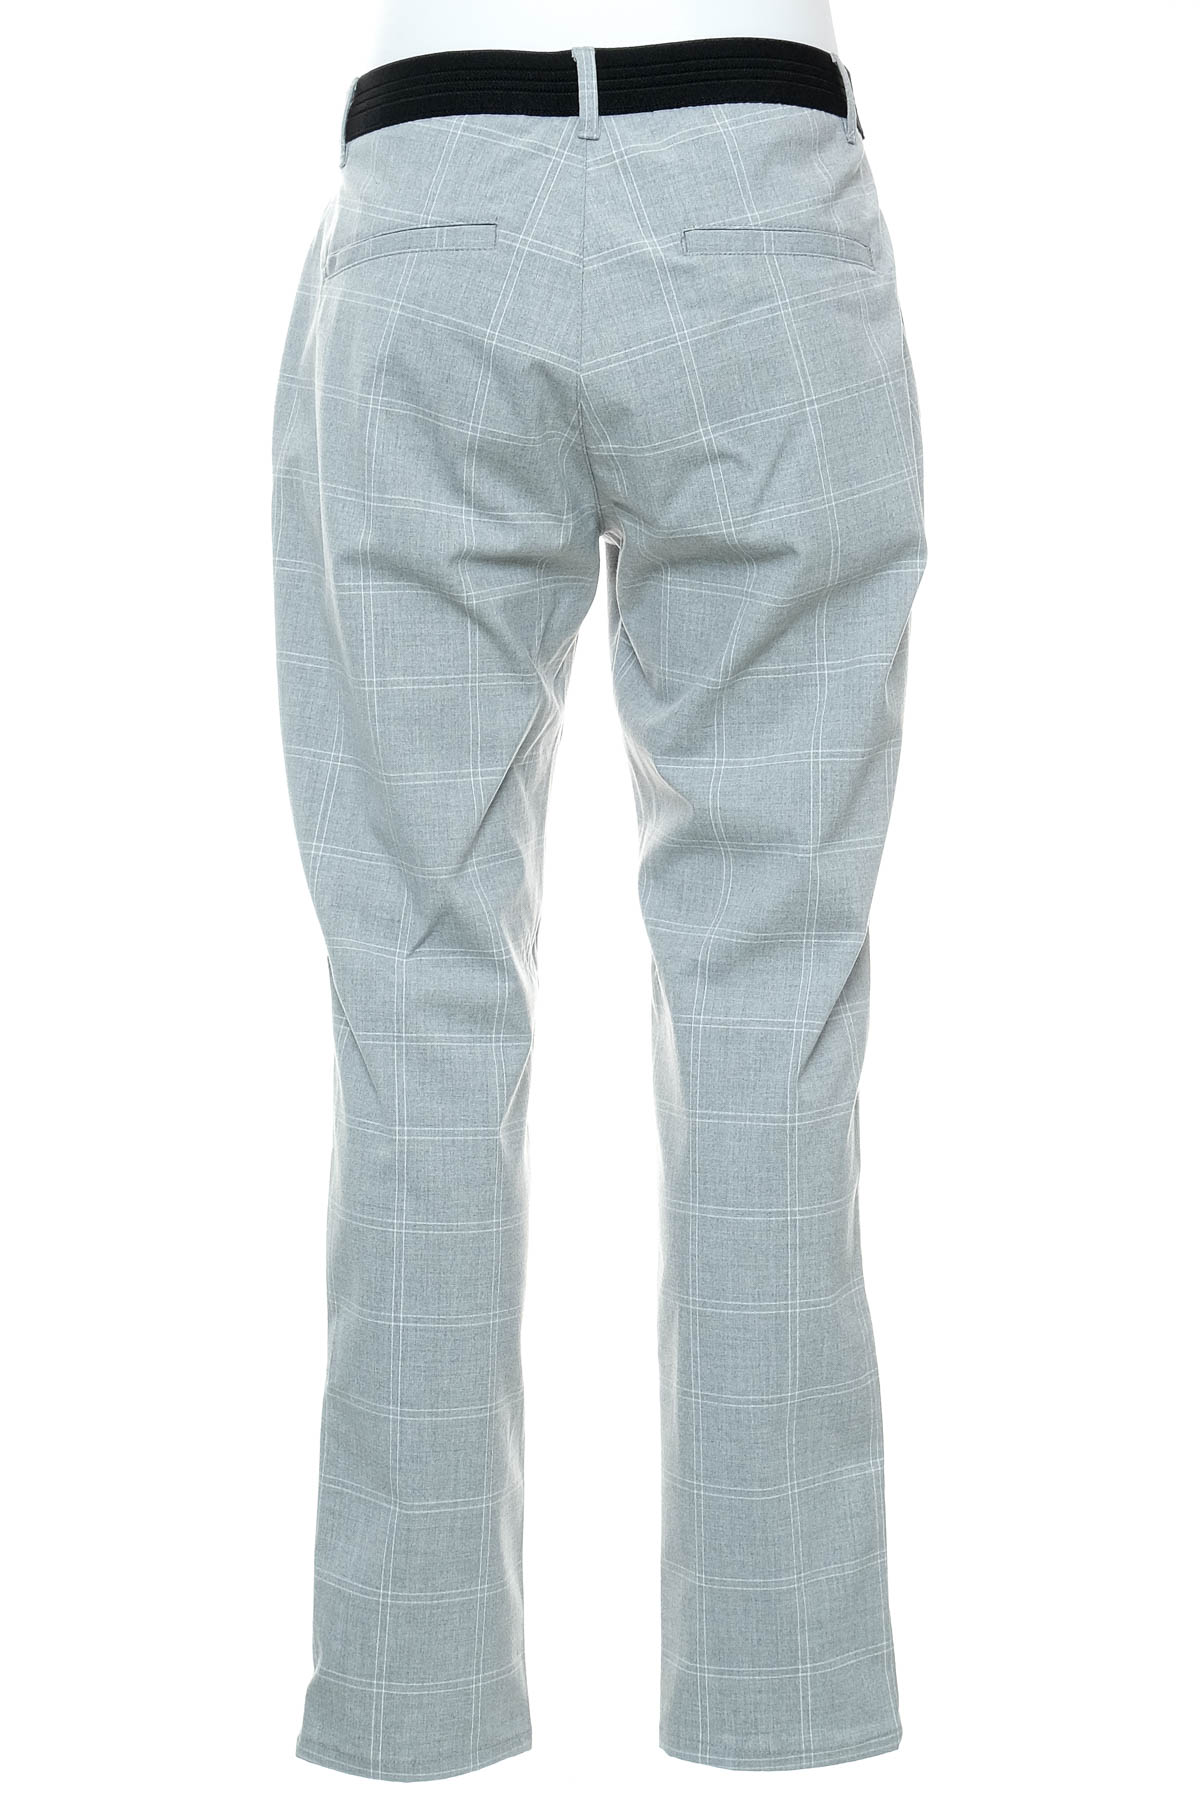 Men's trousers - ZARA - 1